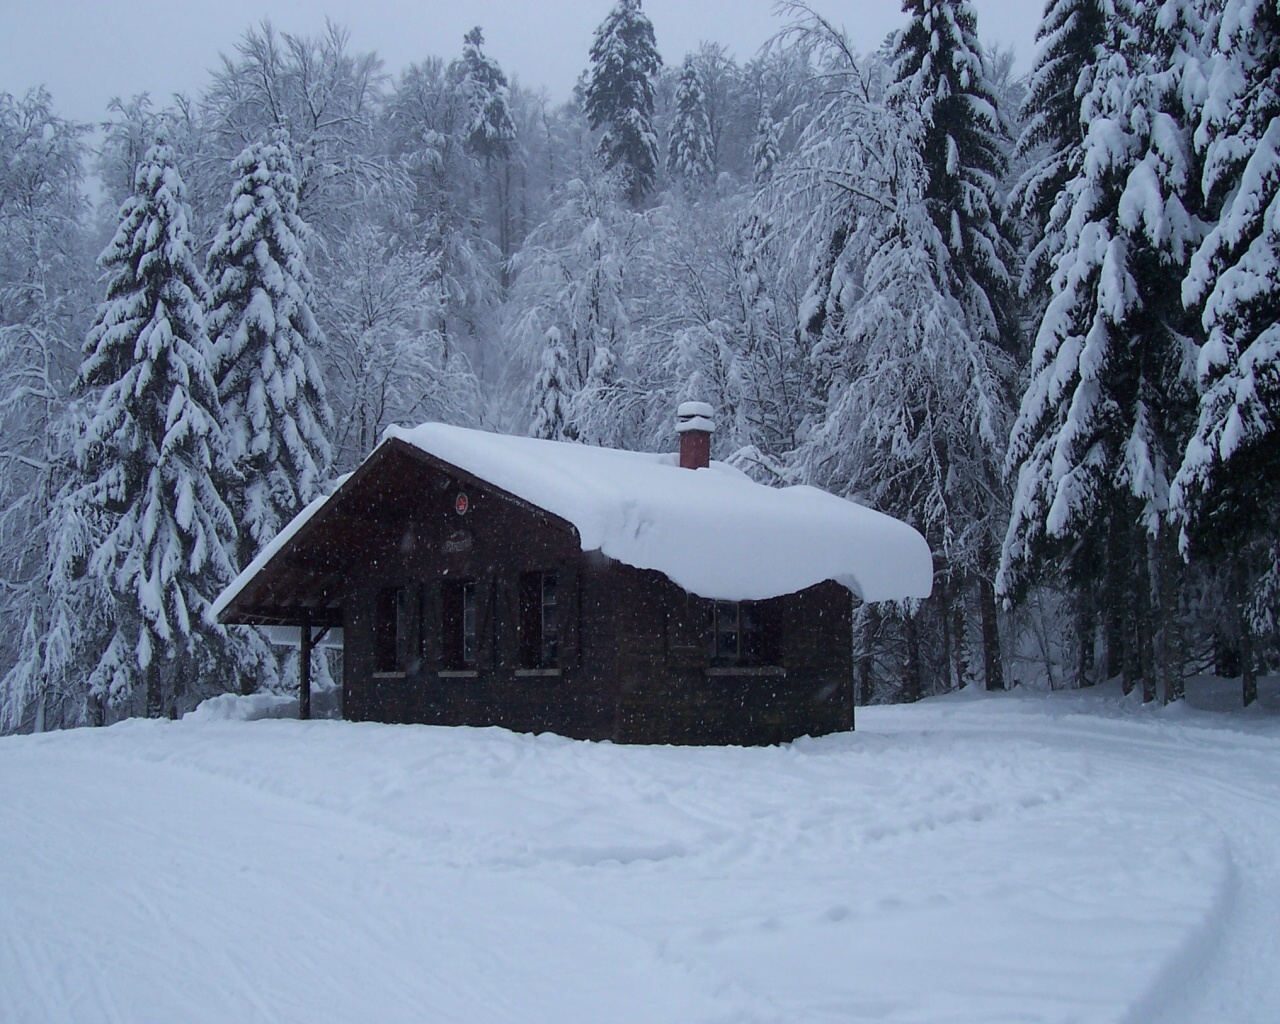 hiver carta da parati,neve,inverno,albero,congelamento,casa